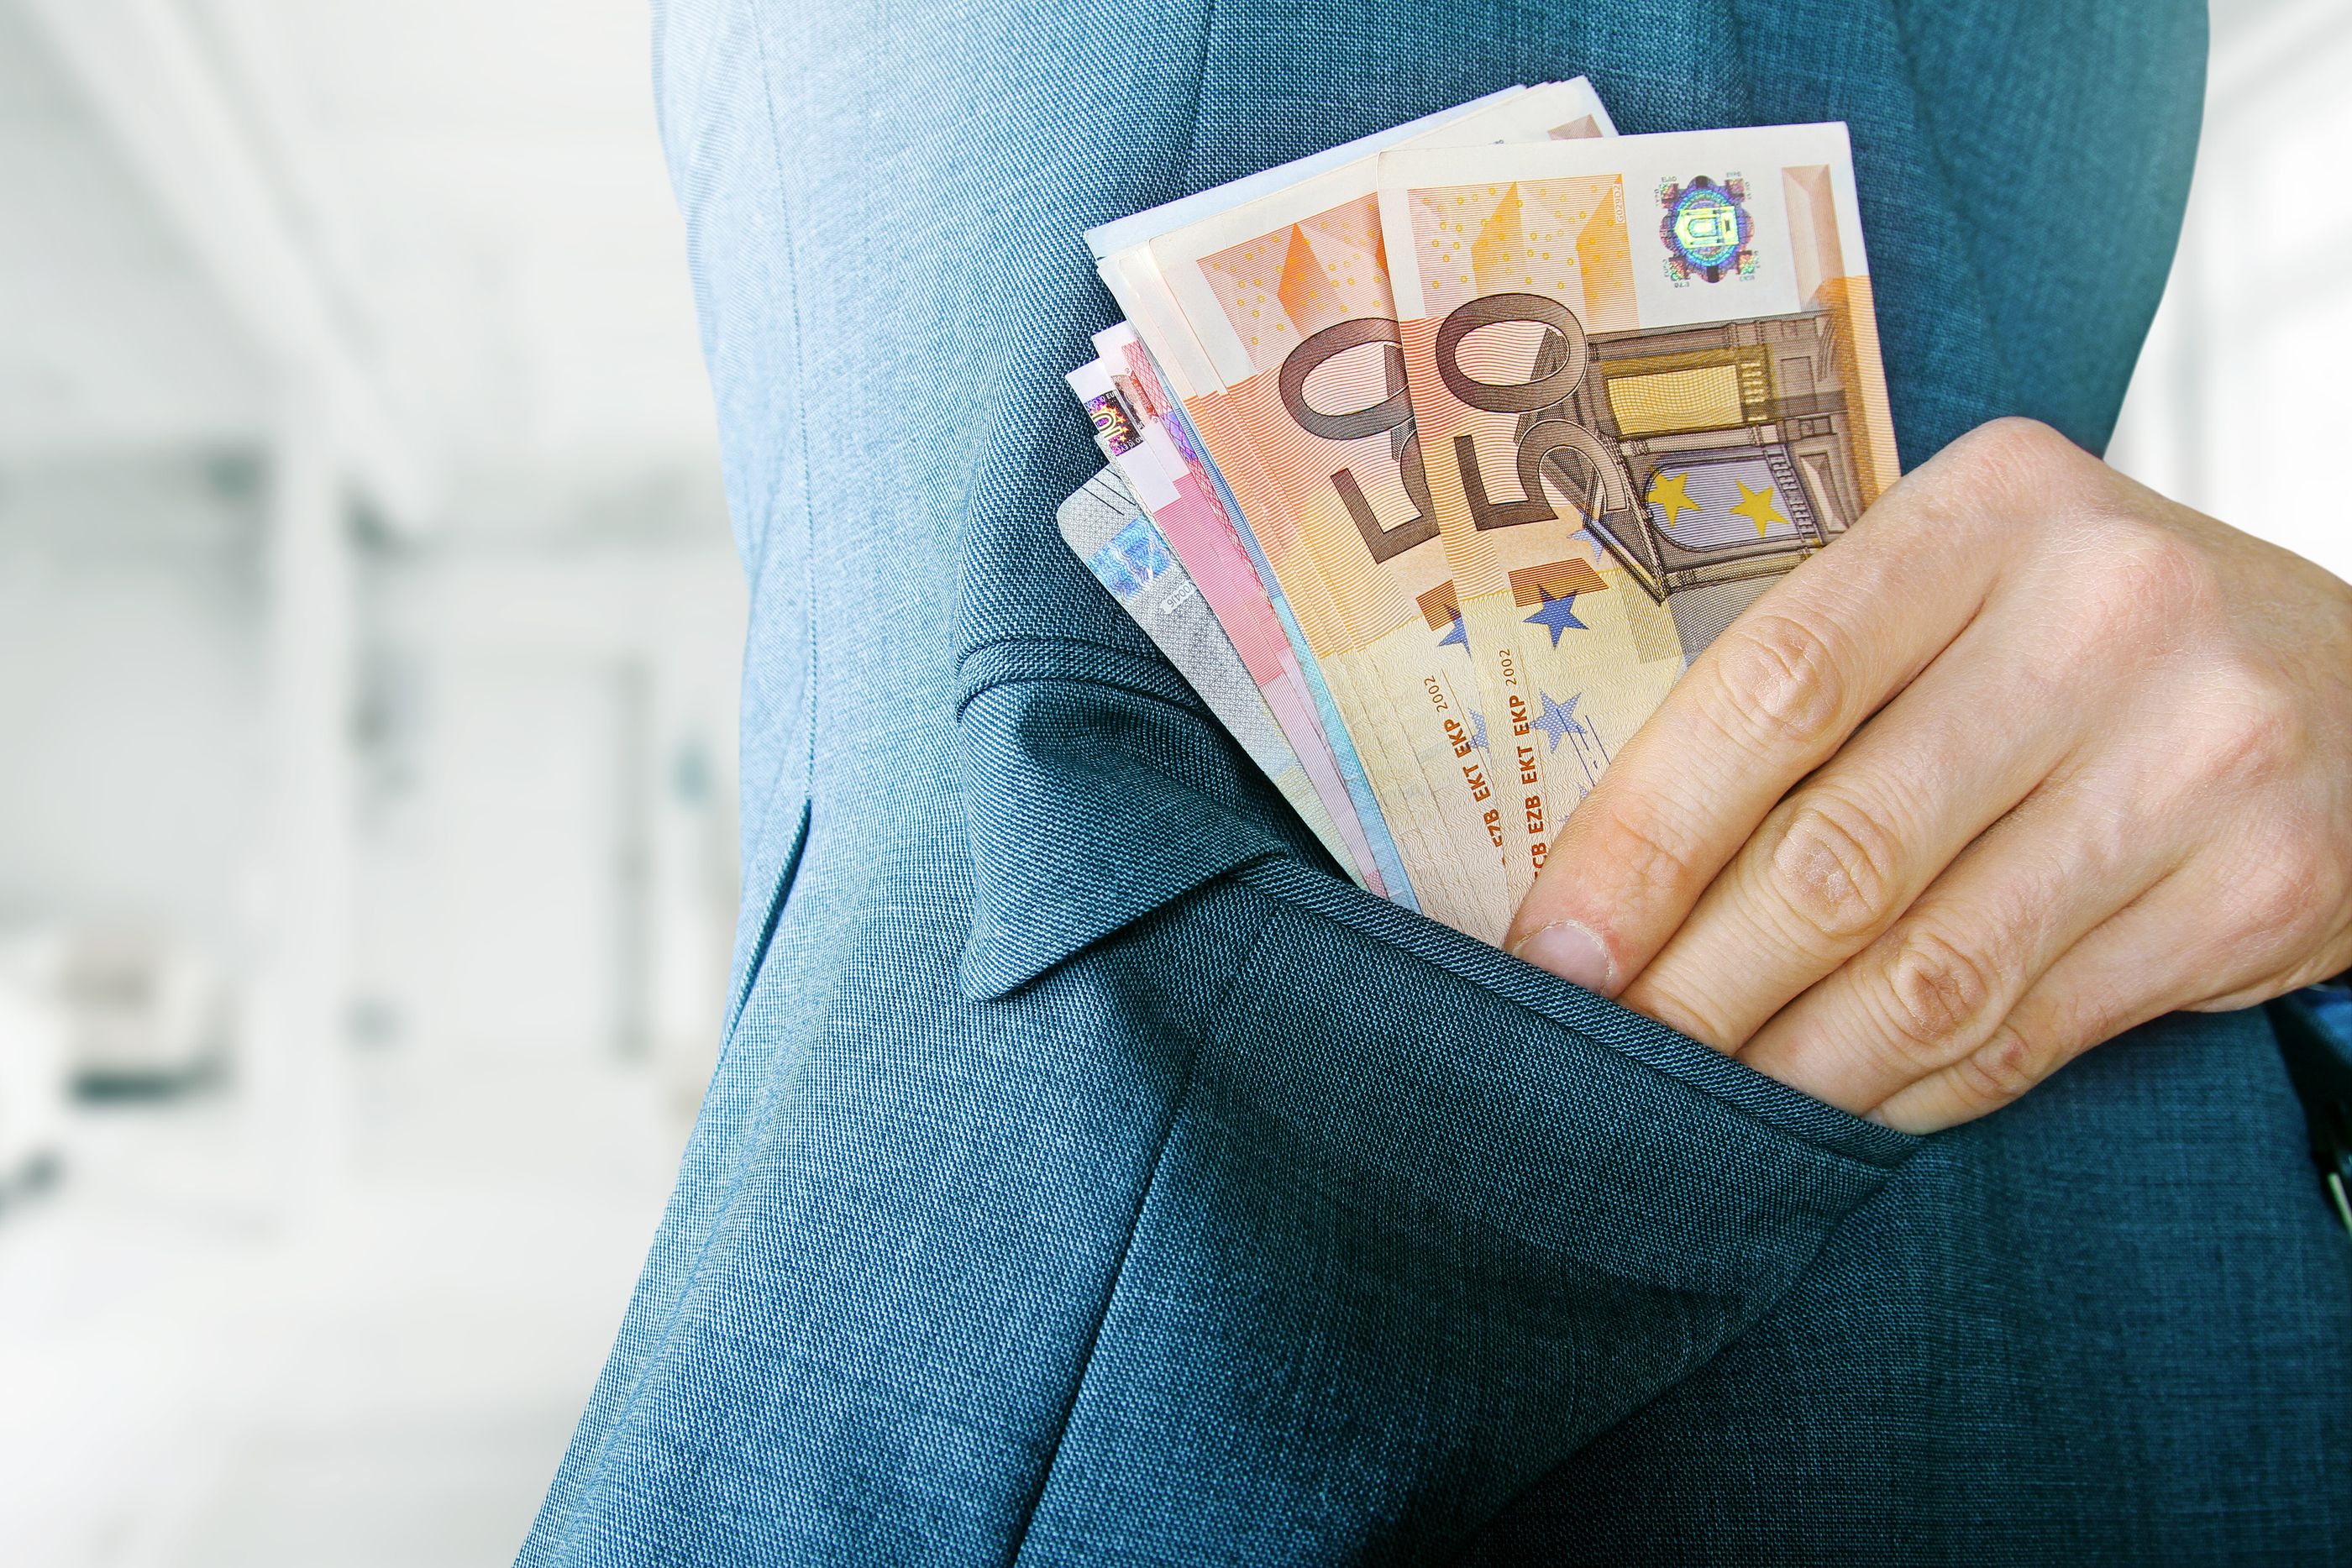 Un camarero gana un pulso al Estado y se queda con los 4.200 euros que encontró en una chaqueta